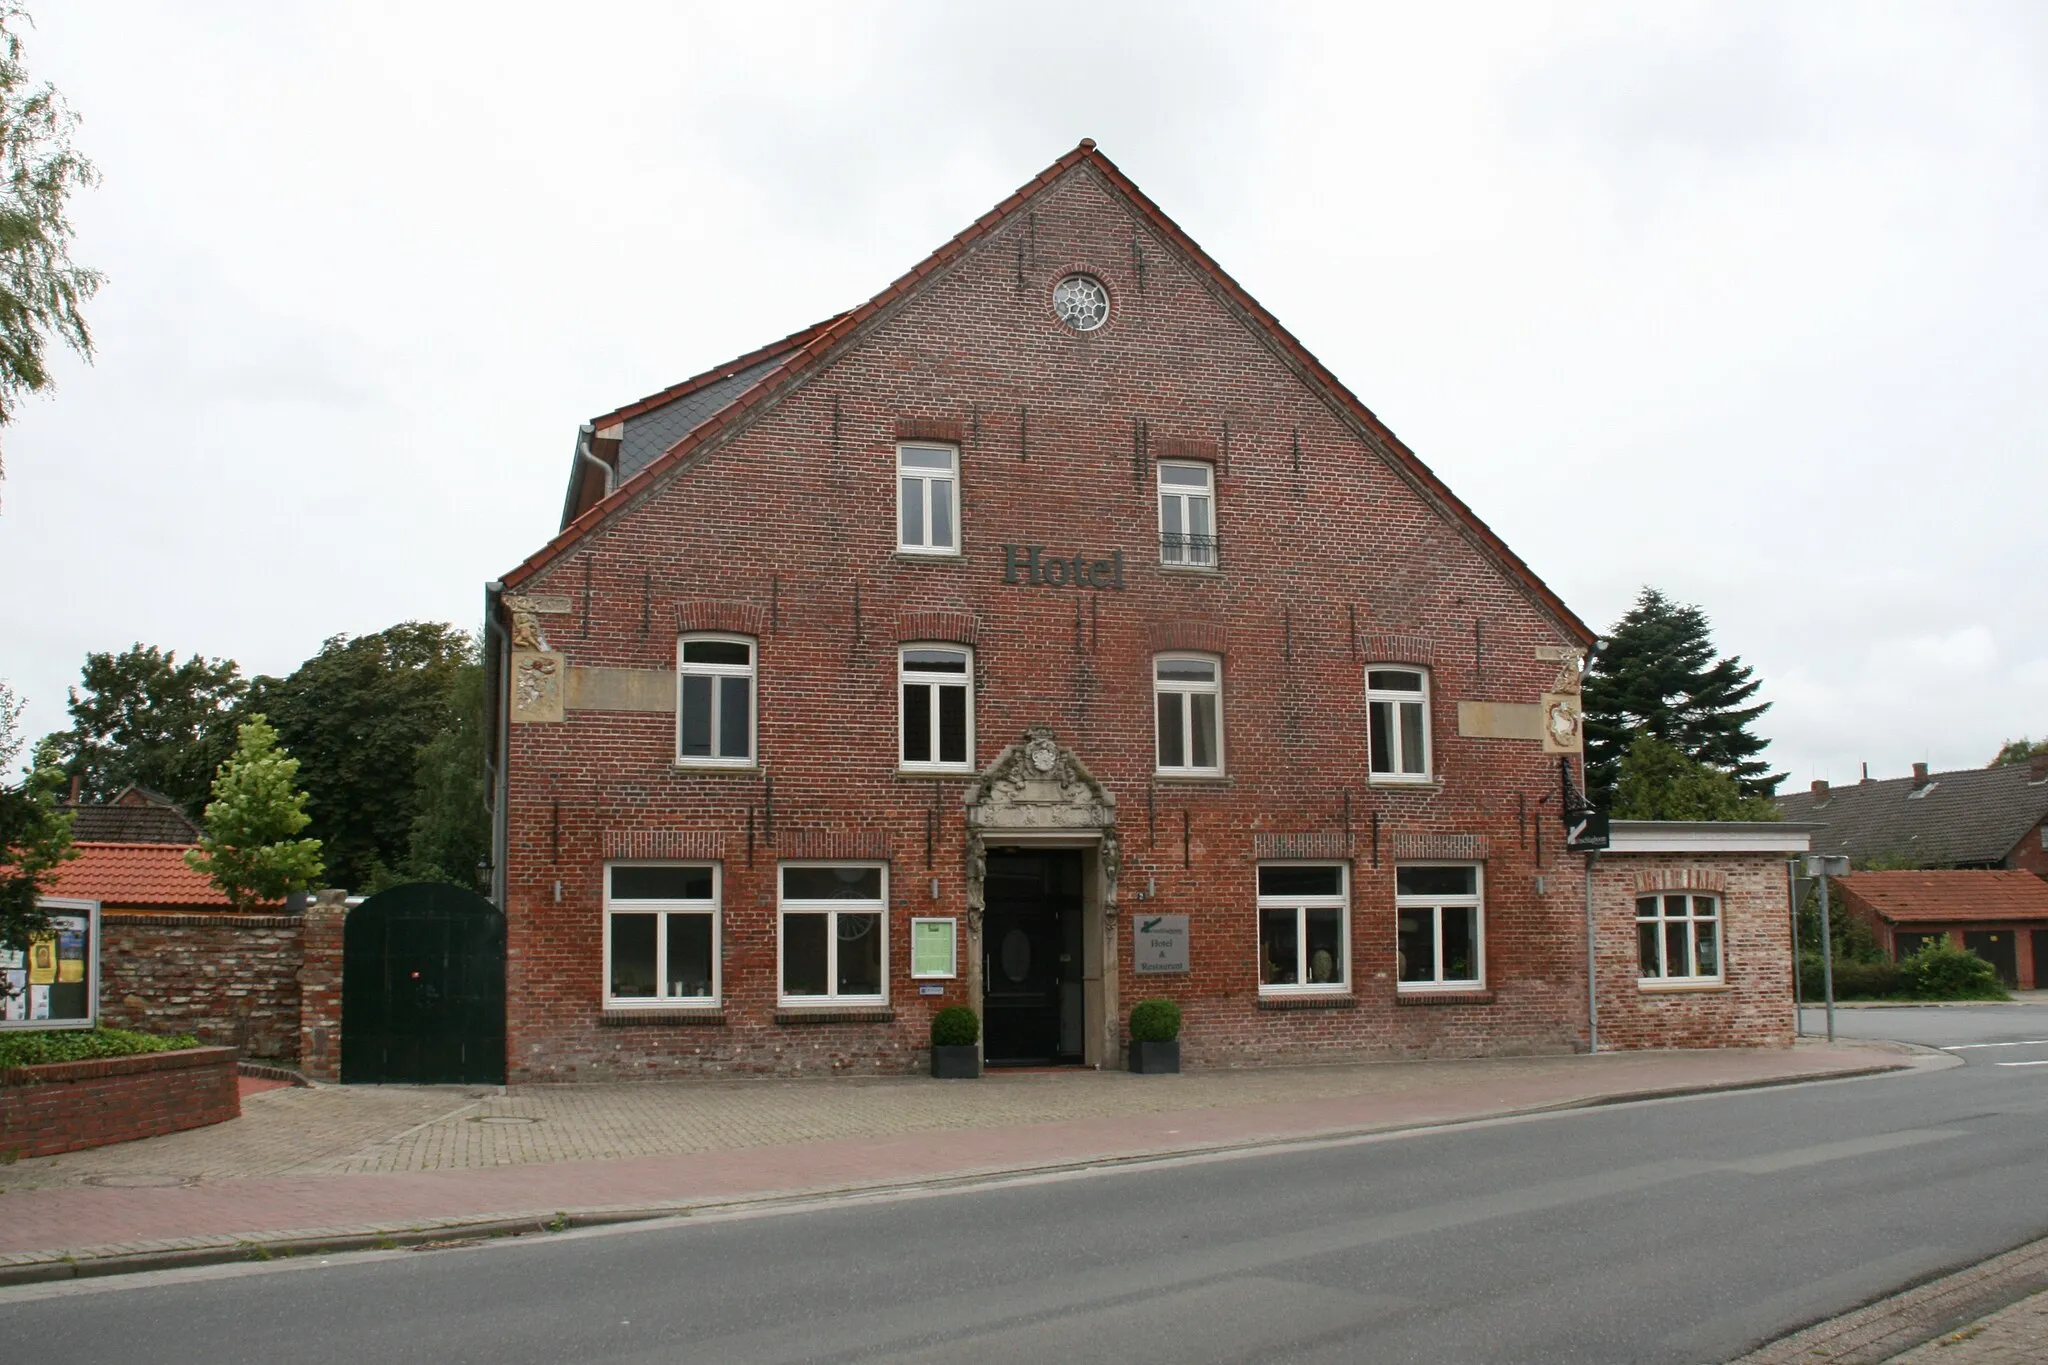 Photo showing: Gebäude Hotel To`nschlagboom in Waddewarden mit historischen Eingangsportal